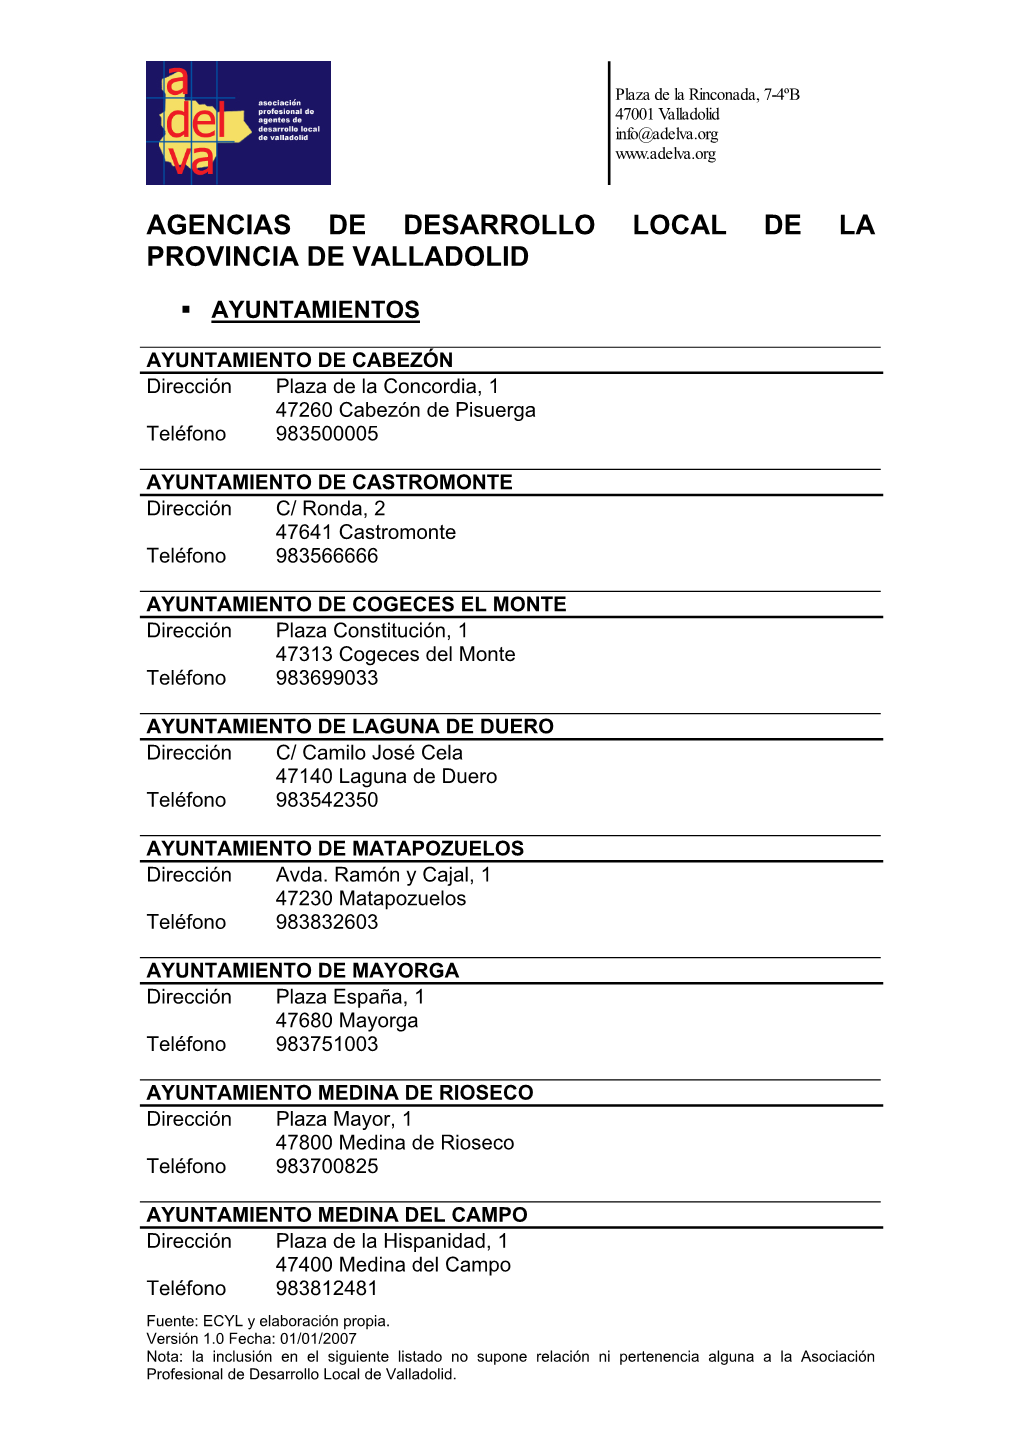 Agencias De Desarrollo Local De La Provincia De Valladolid